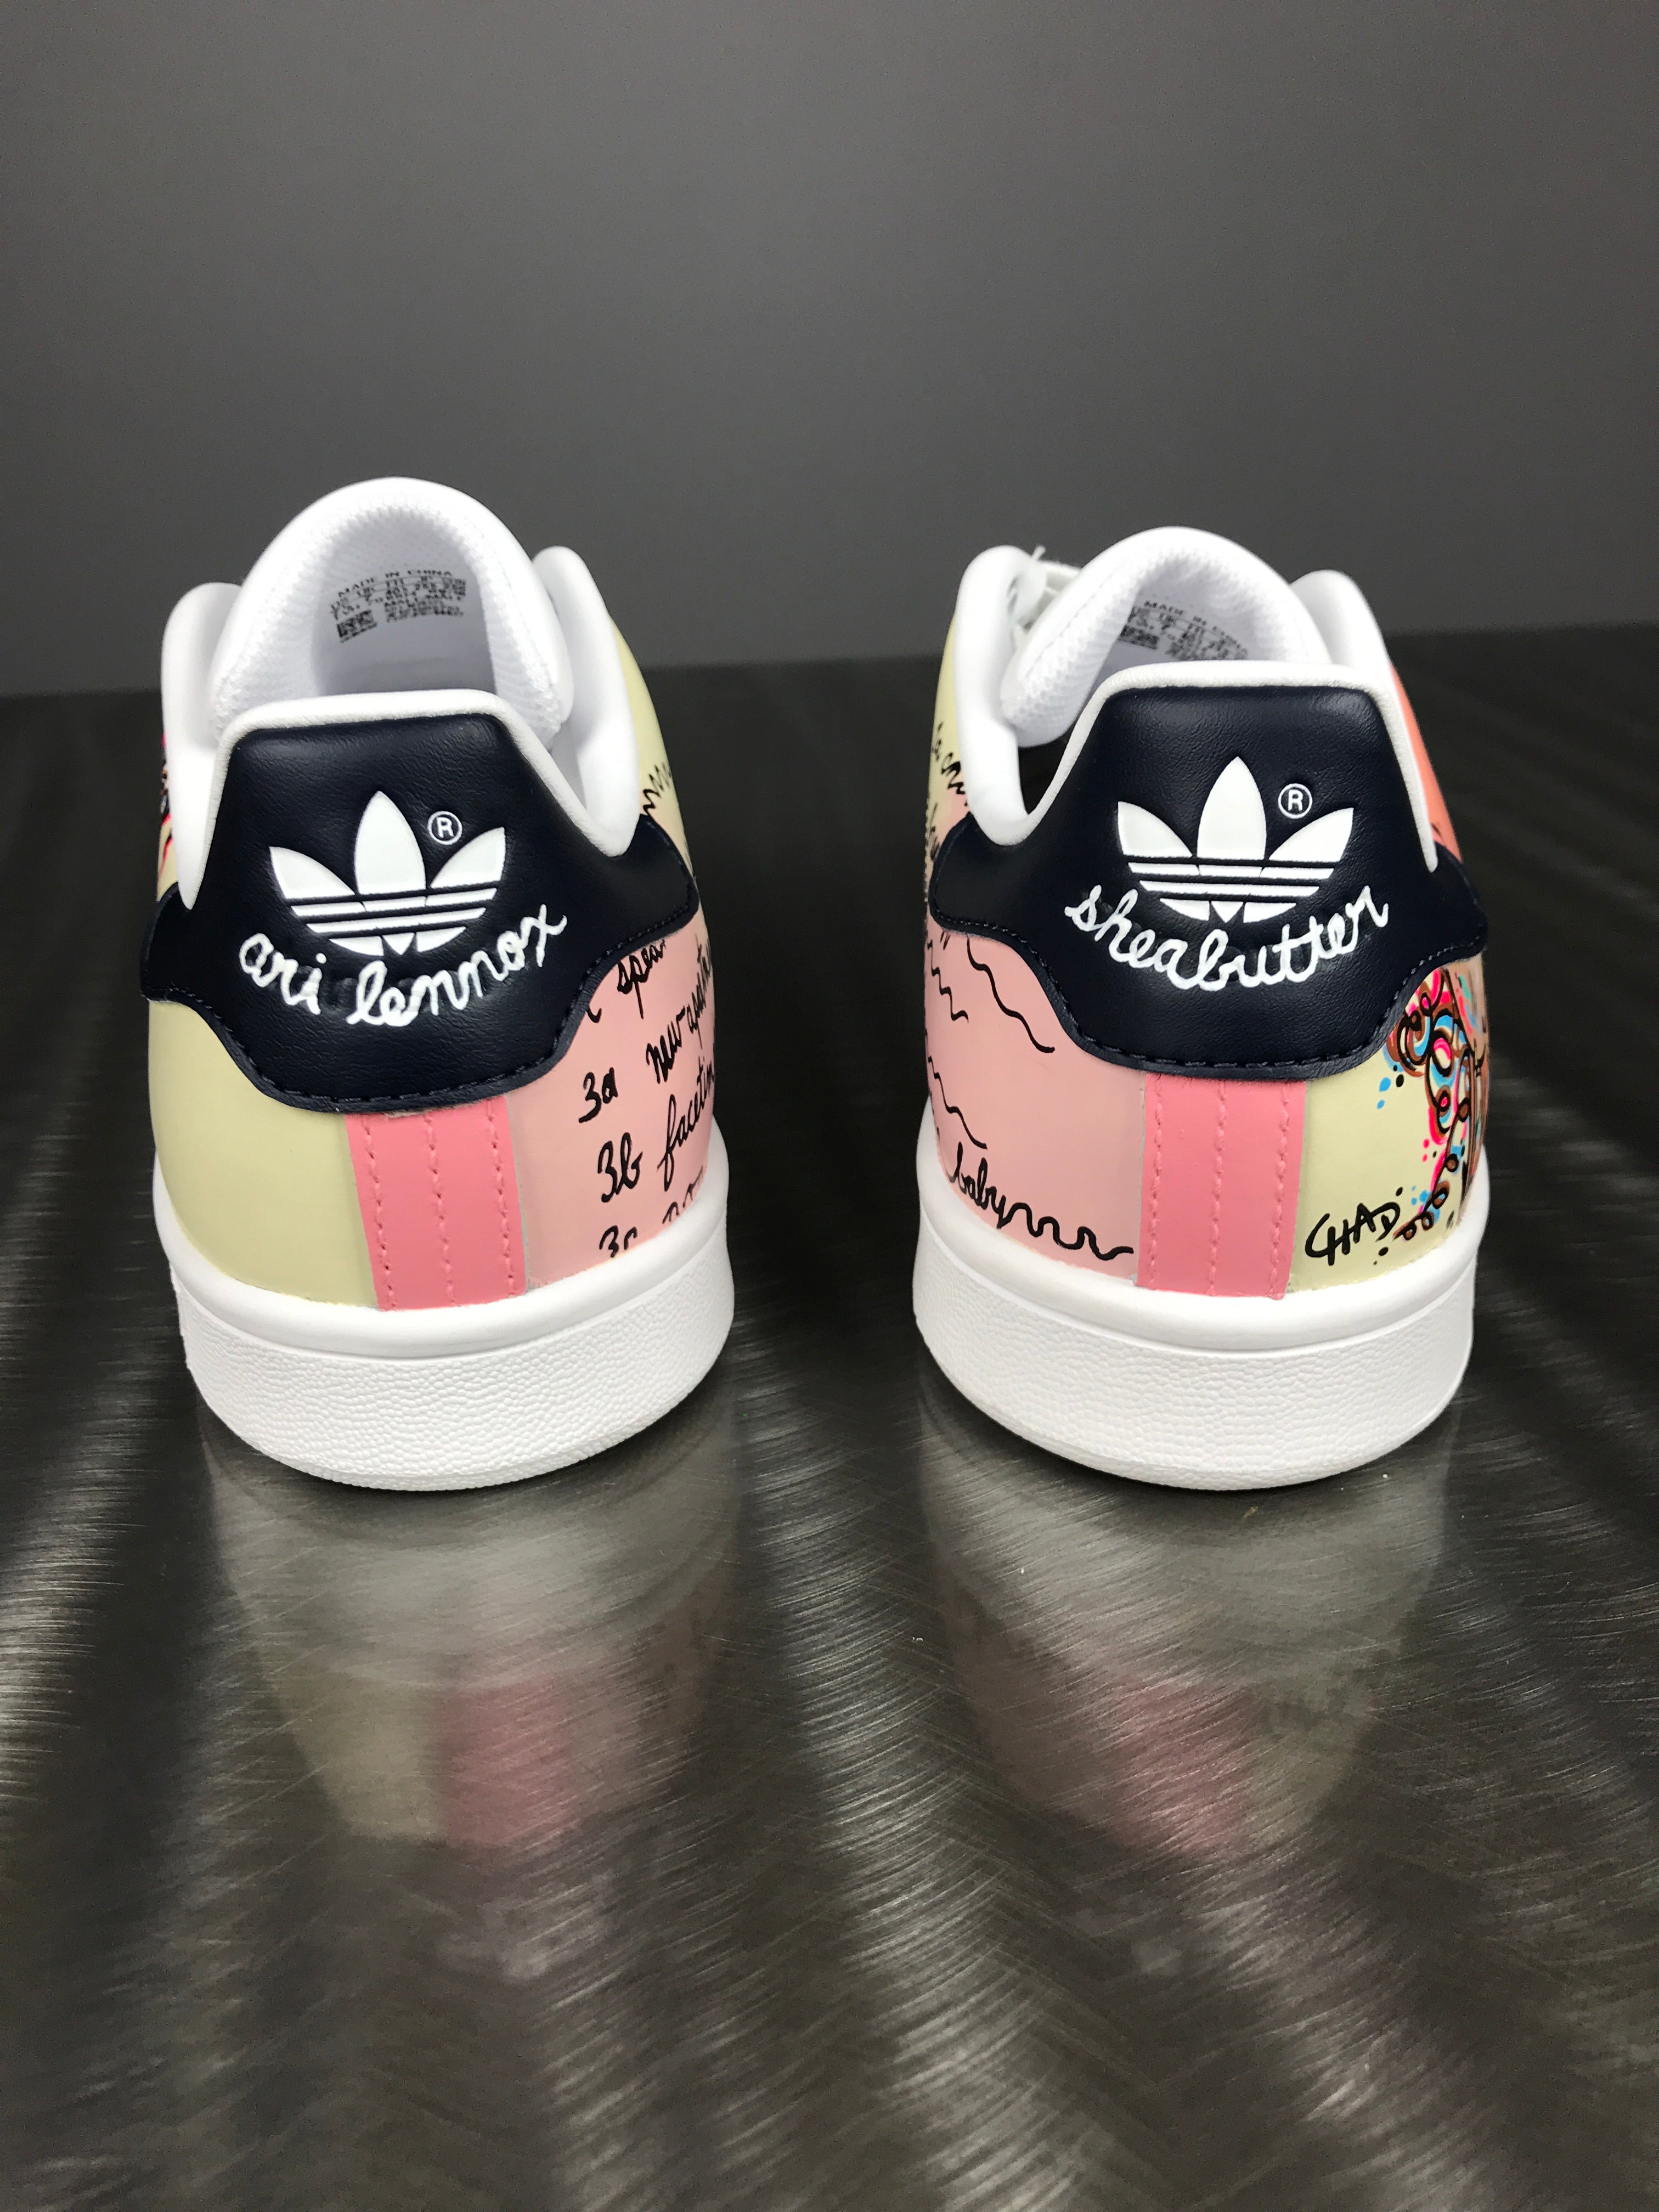 Ari Lennox Shea Butter Baby - Adidas Stan Smith shoes